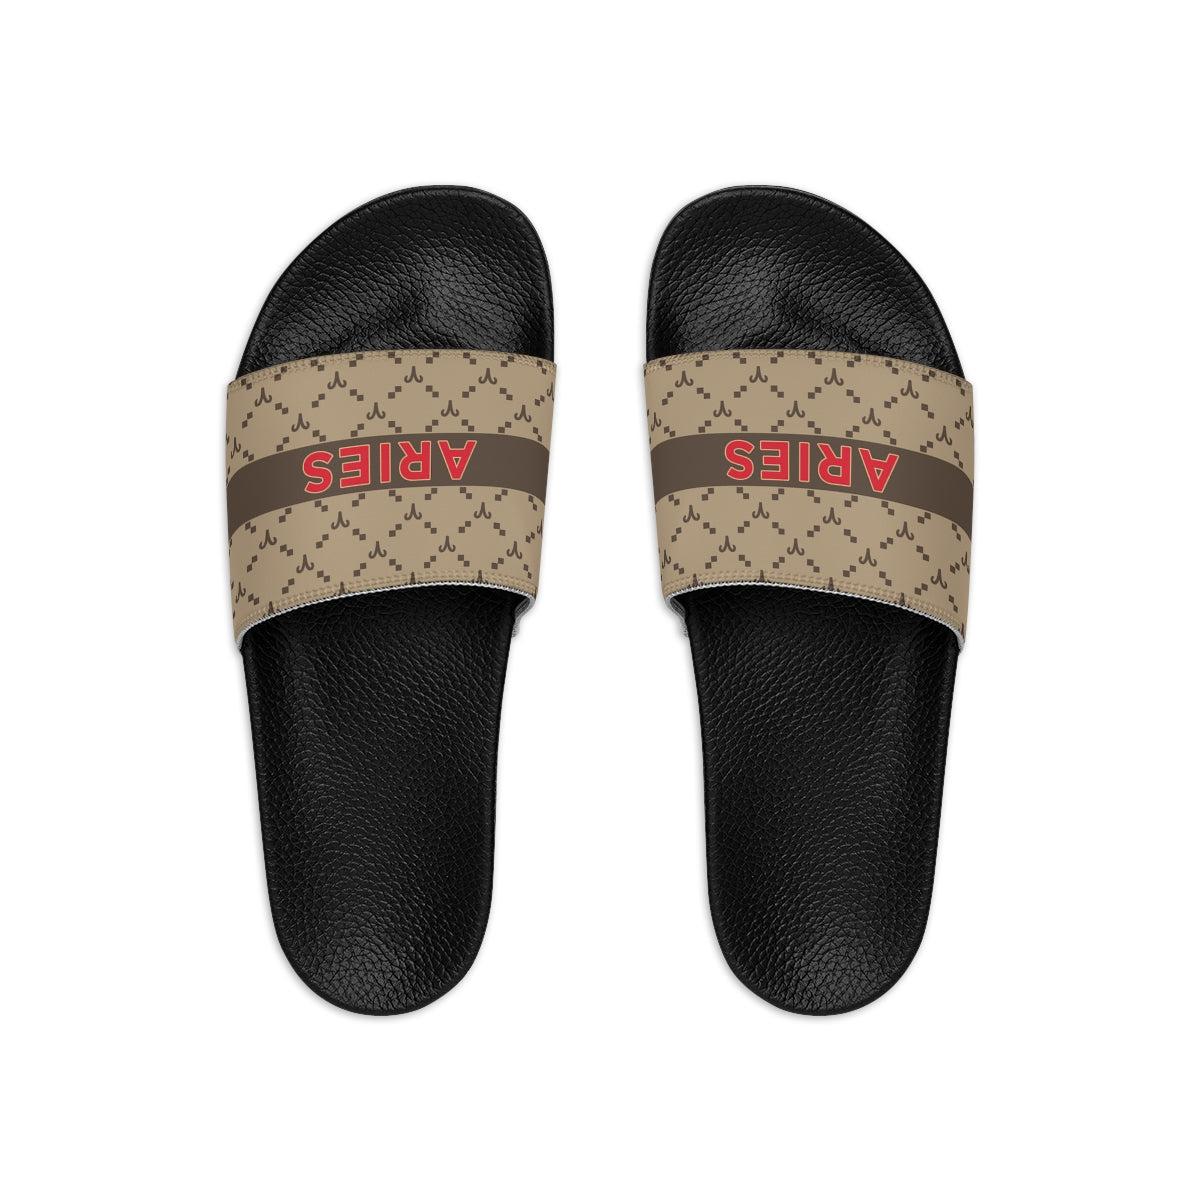 Aries G-Style Slide Sandals - Beige